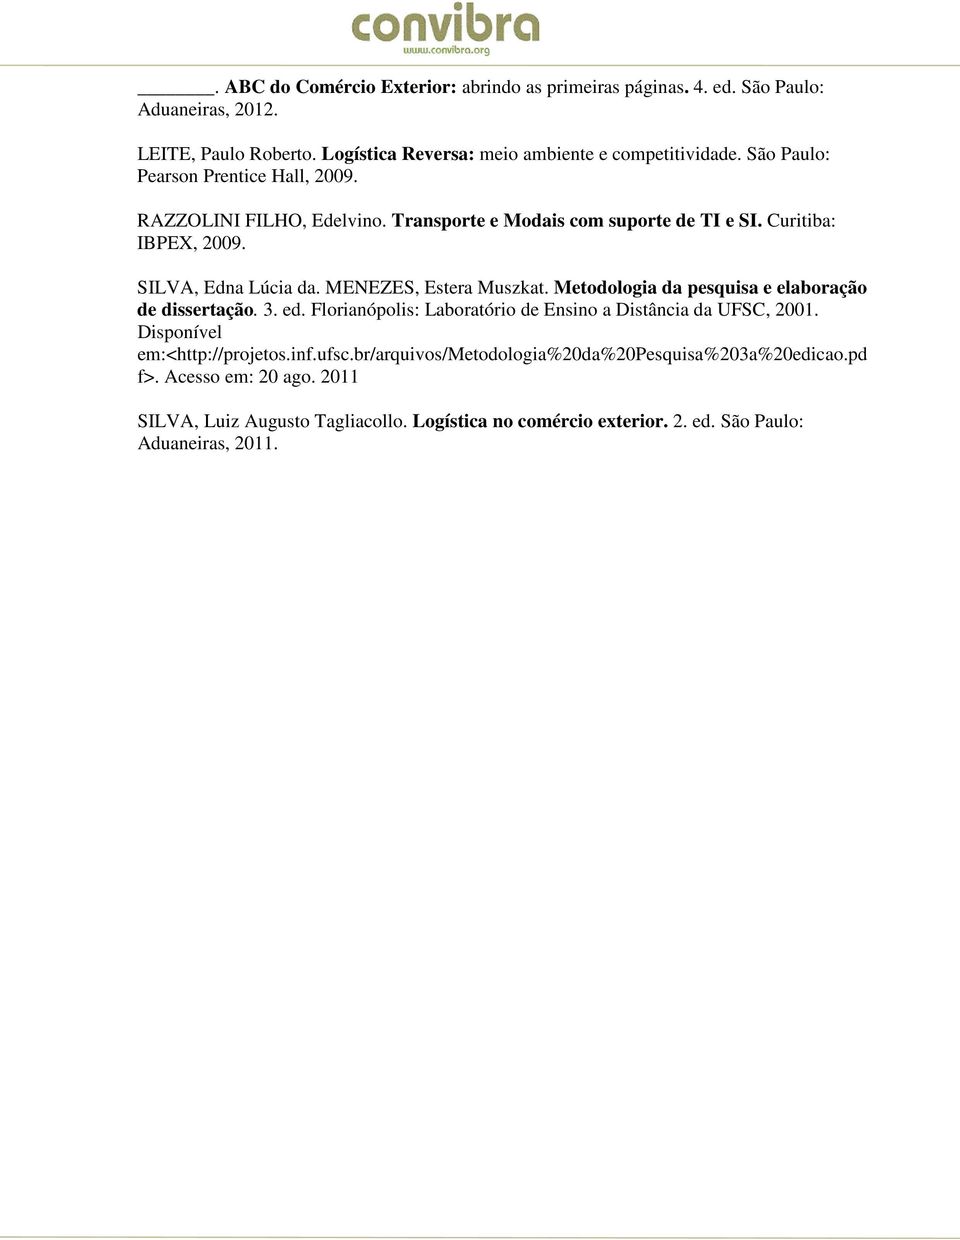 MENEZES, Estera Muszkat. Metodologia da pesquisa e elaboração de dissertação. 3. ed. Florianópolis: Laboratório de Ensino a Distância da UFSC, 2001.